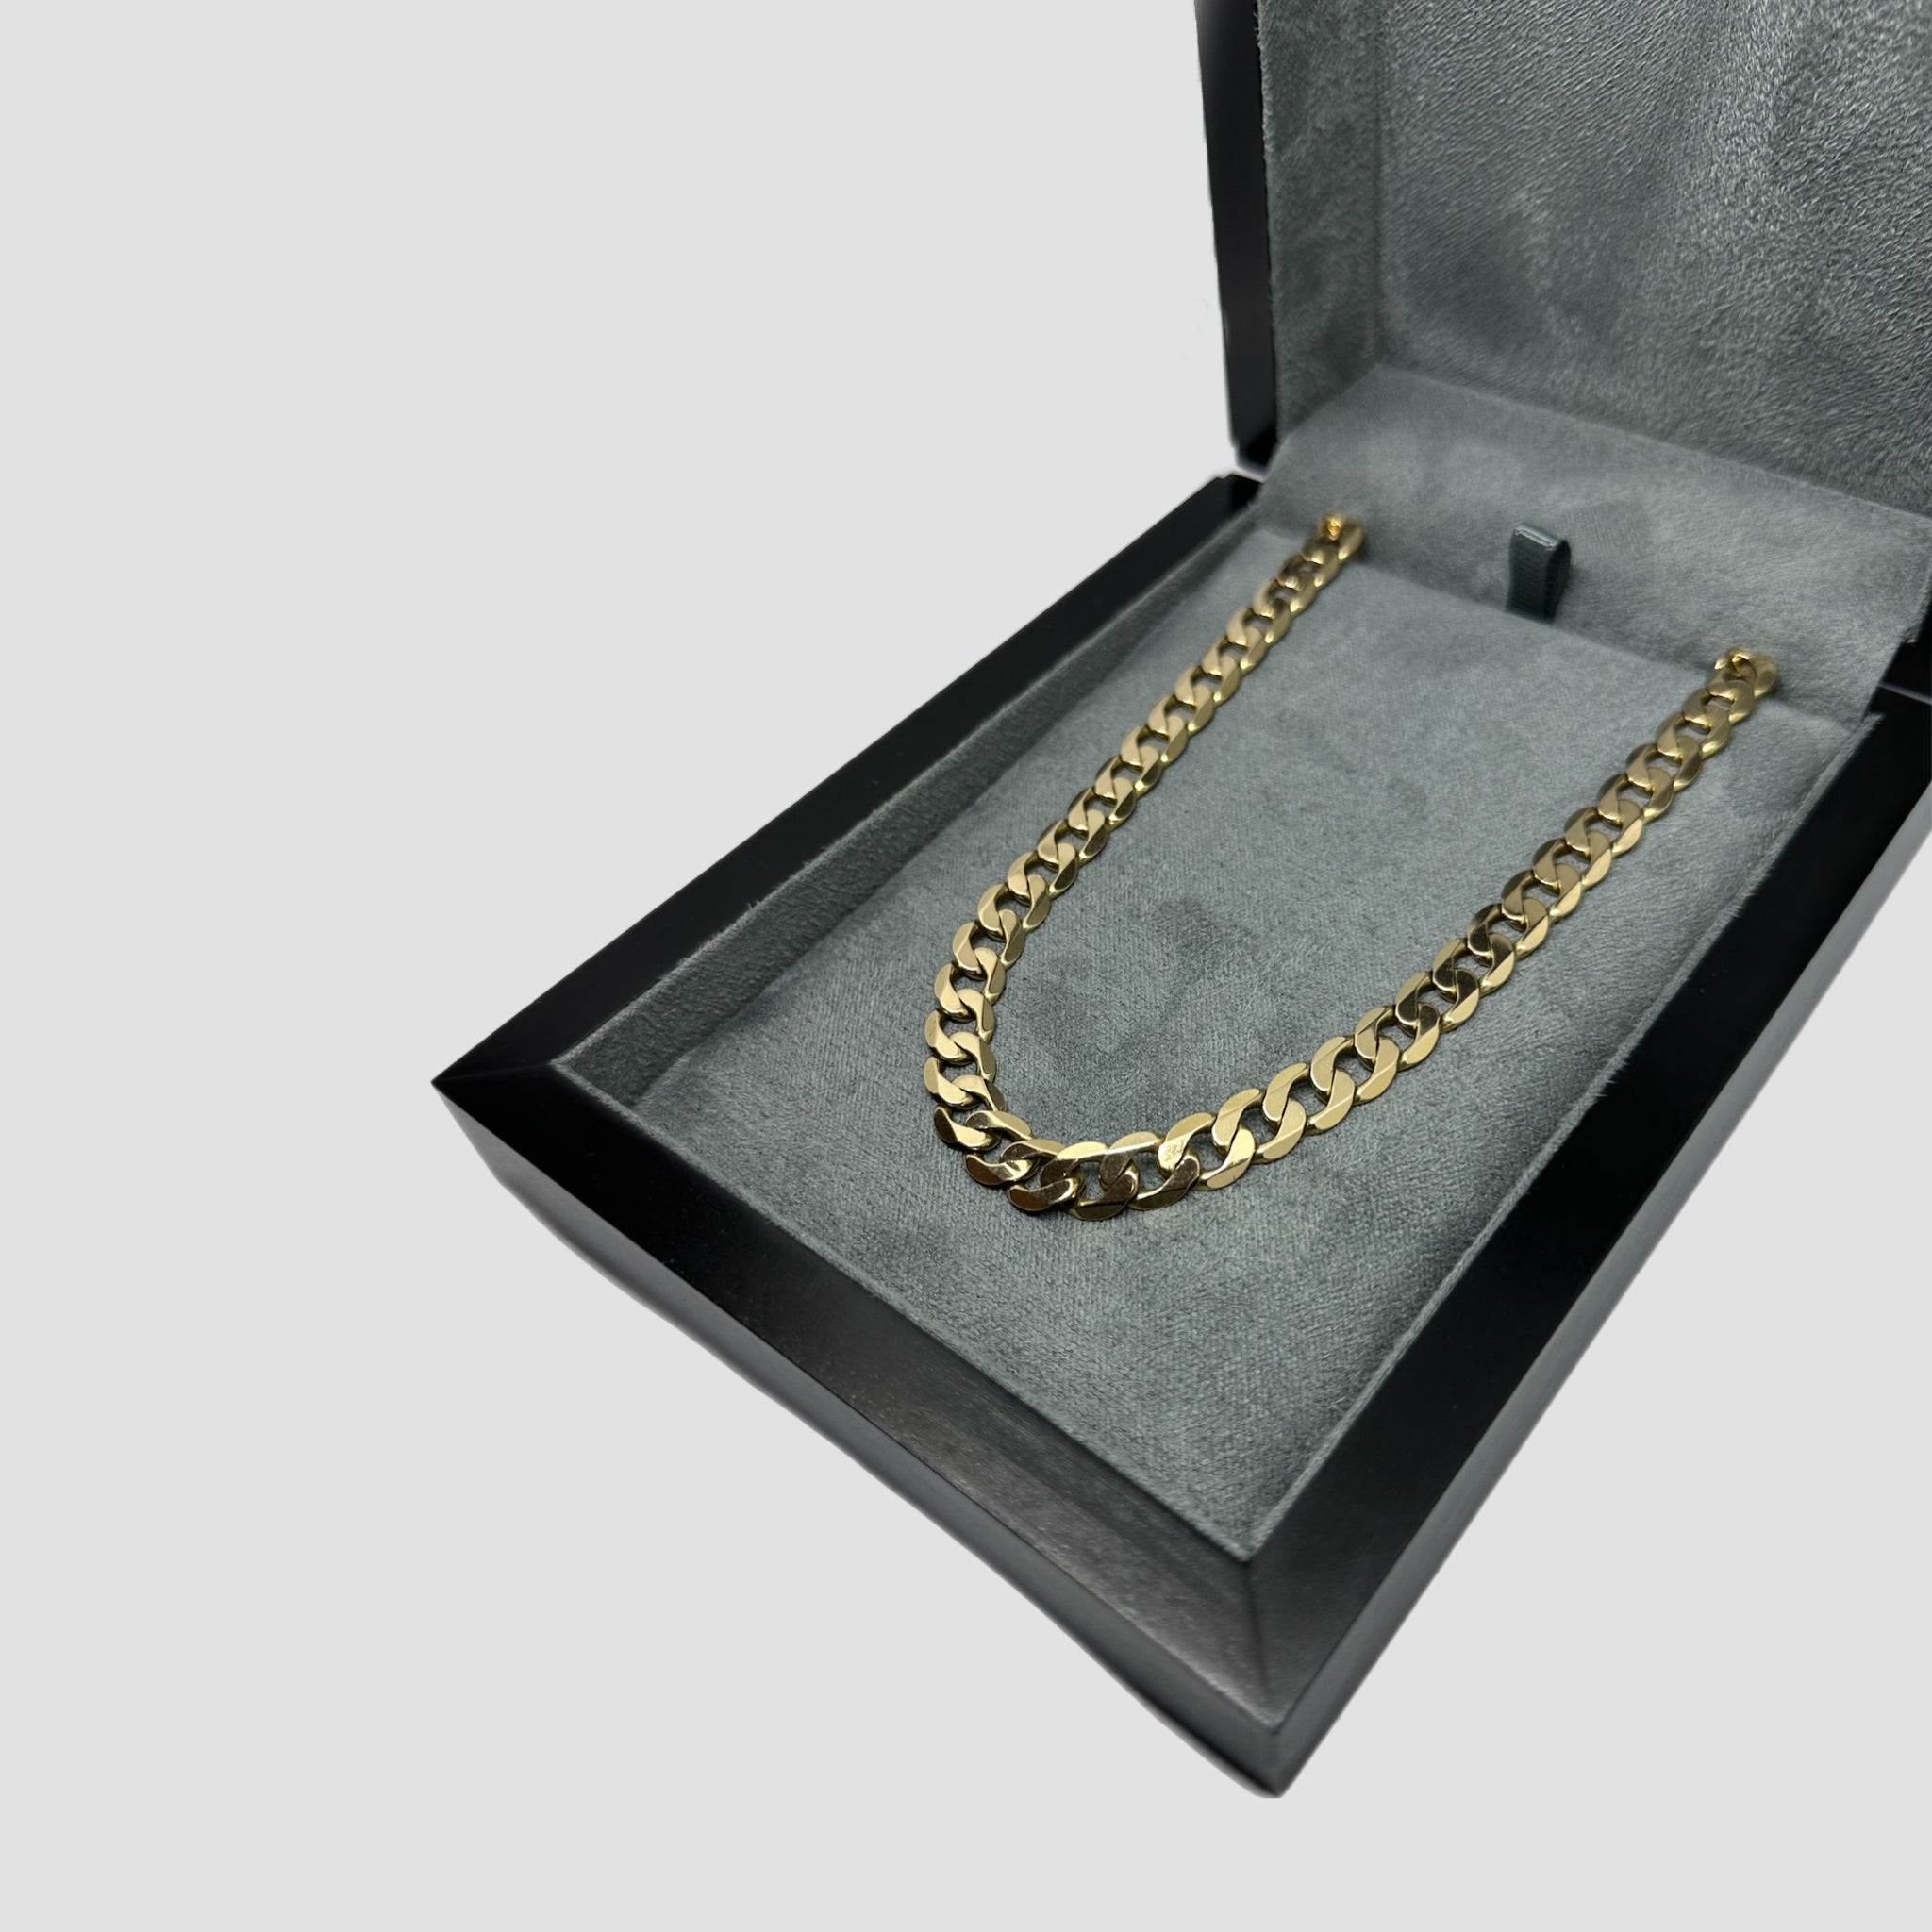 Necklace / Bracelet Storage Jewellery Box